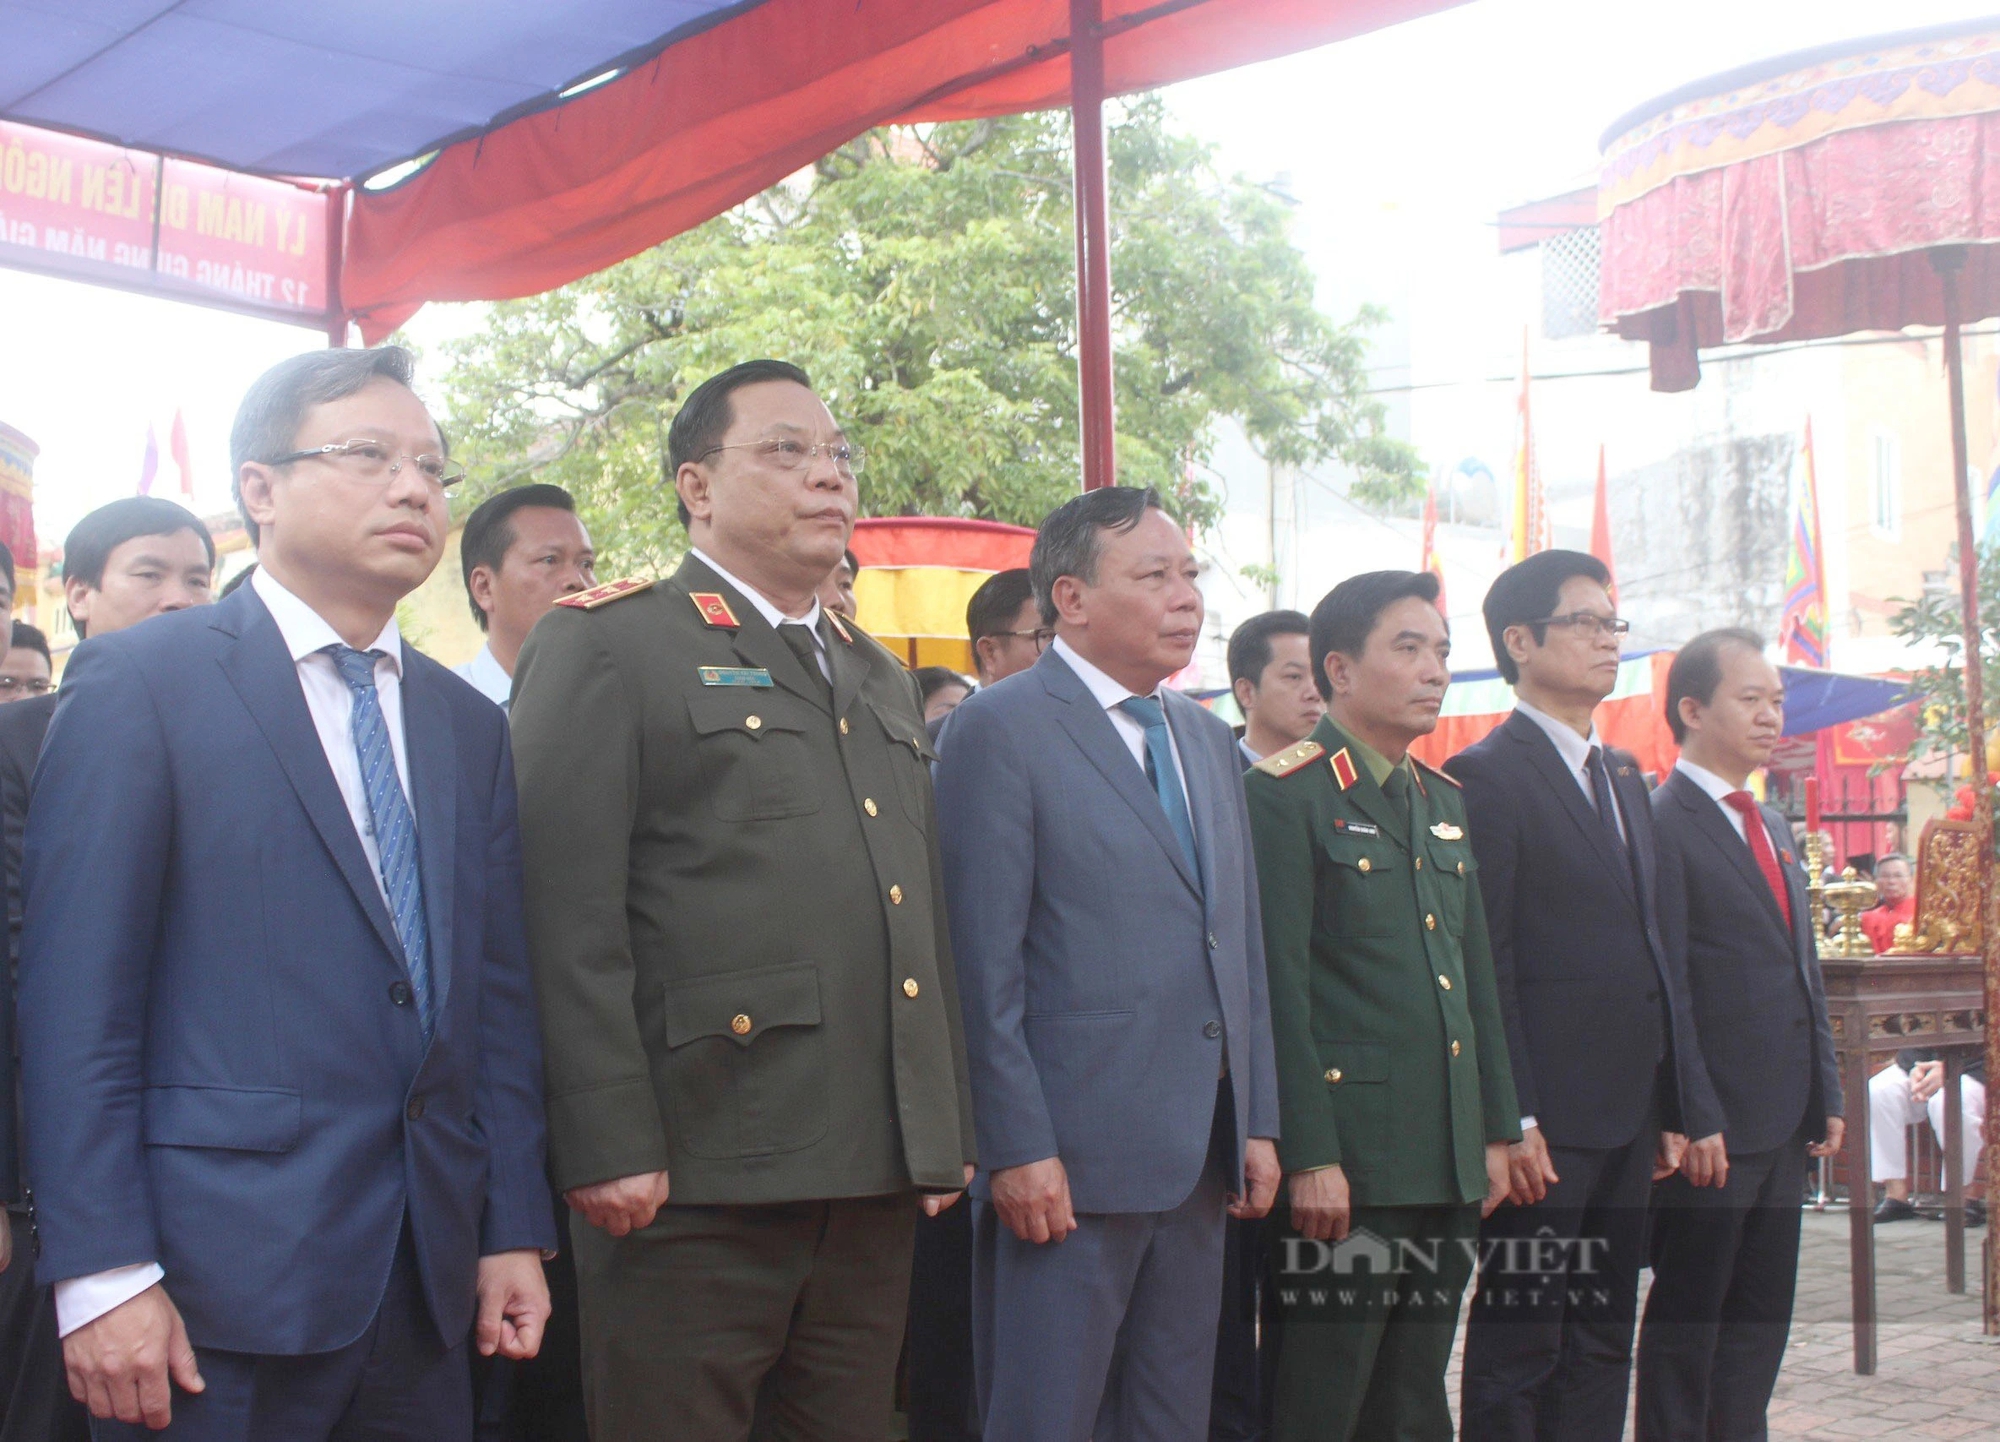 Độc đáo hình ảnh tướng bà trong môn cờ người tại lễ hội làng Giang Xá (Hoài Đức, Hà Nội)- Ảnh 2.